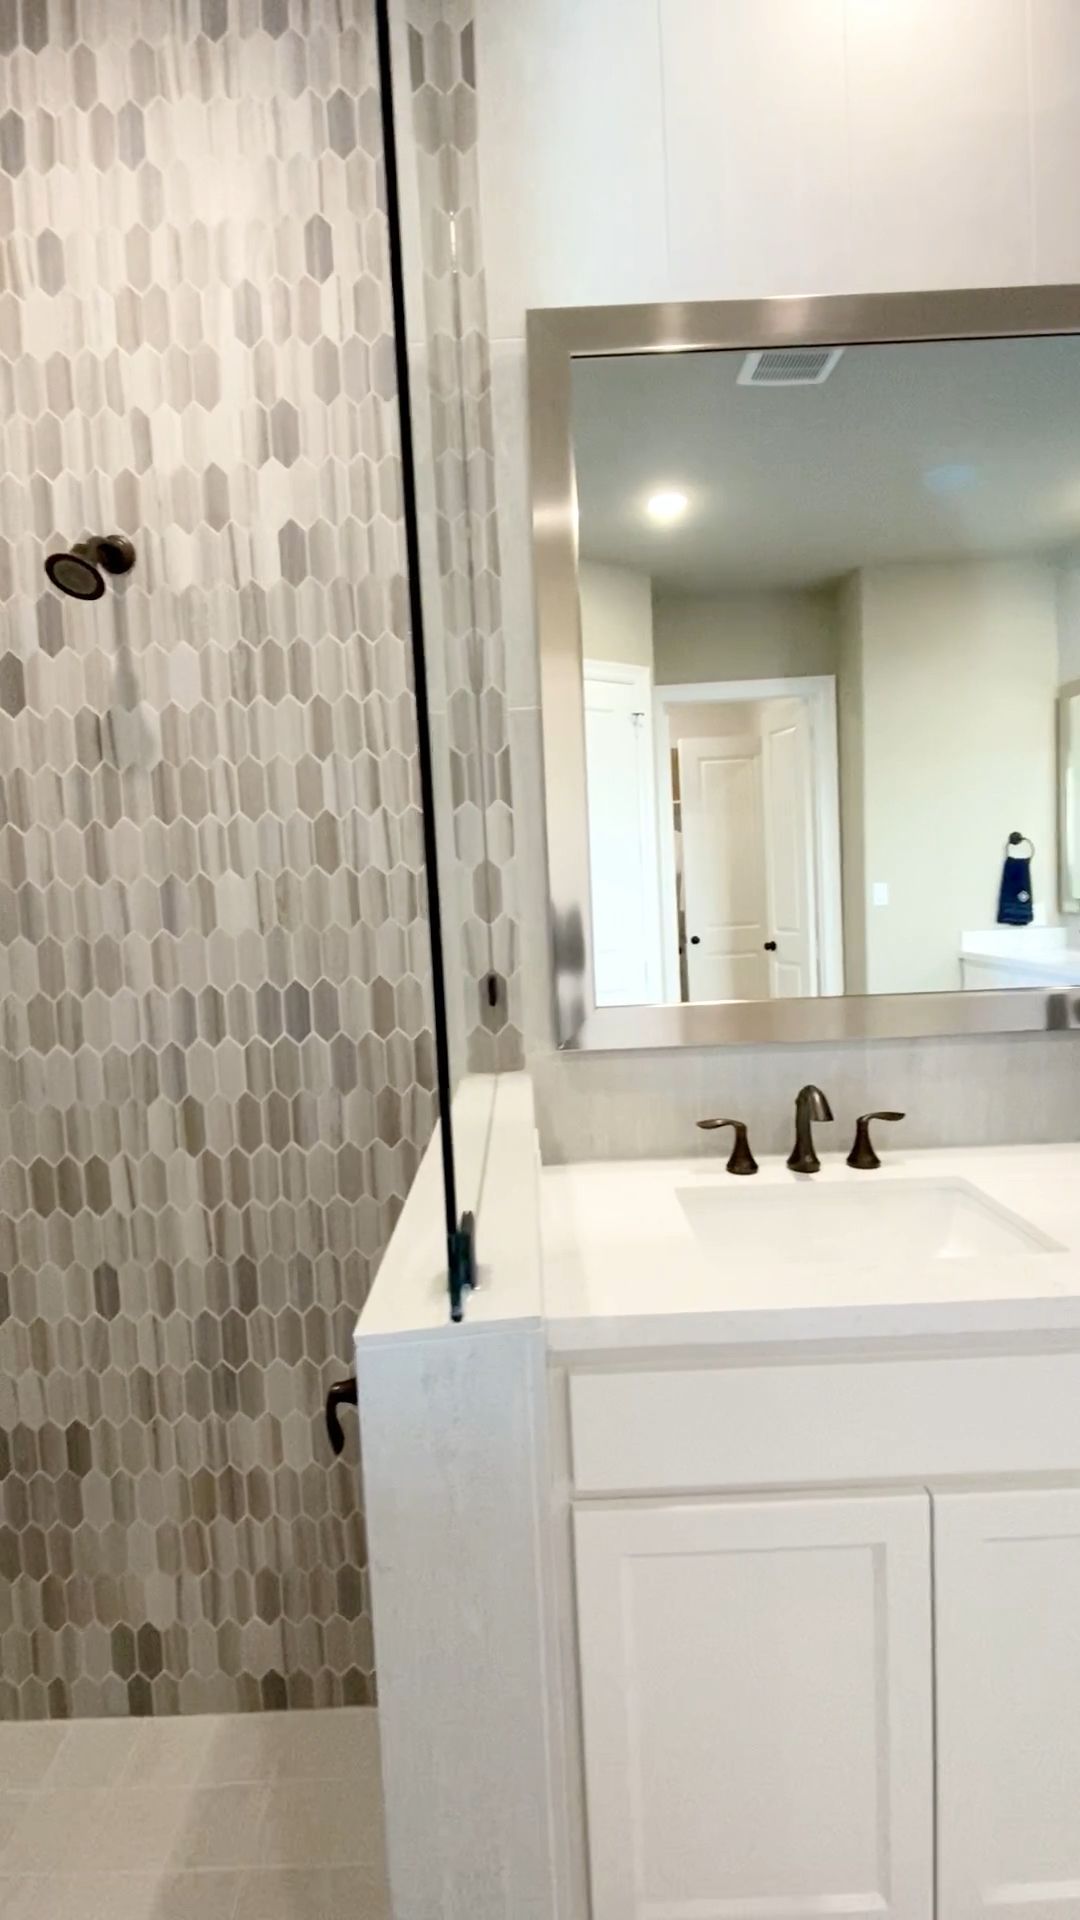 Master Bathroom design with beautiful shower tile - Master Bathroom design with beautiful shower tile -   19 diy Bathroom tub ideas